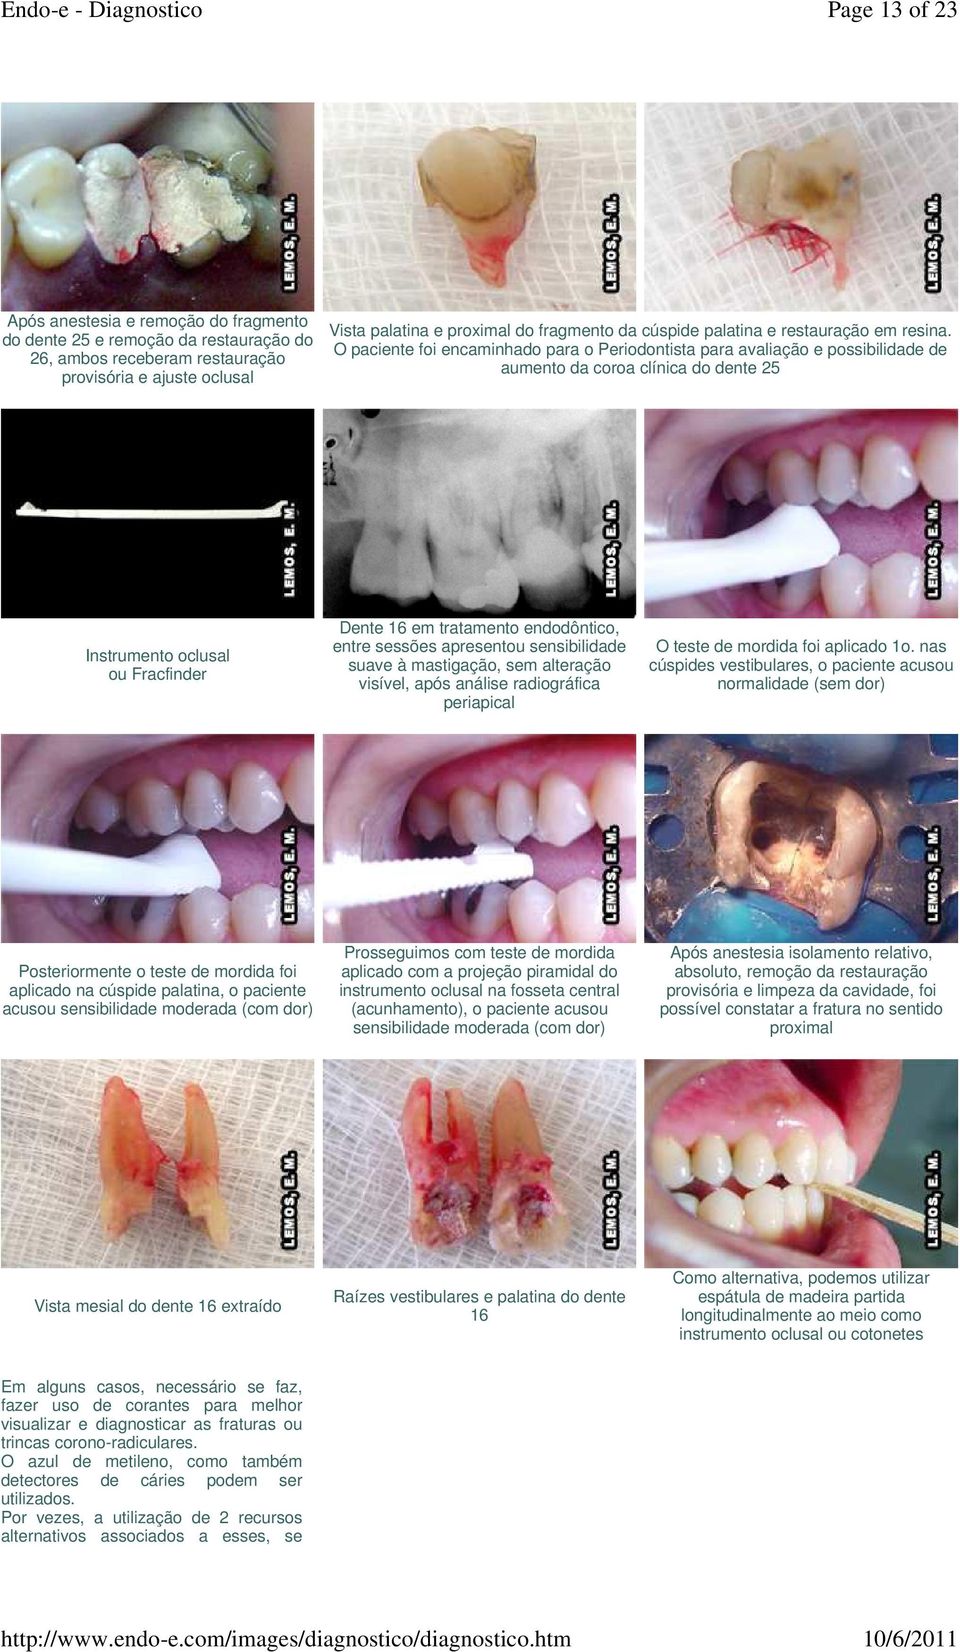 O paciente foi encaminhado para o Periodontista para avaliação e possibilidade de aumento da coroa clínica do dente 25 Instrumento oclusal ou Fracfinder Dente 16 em tratamento endodôntico, entre